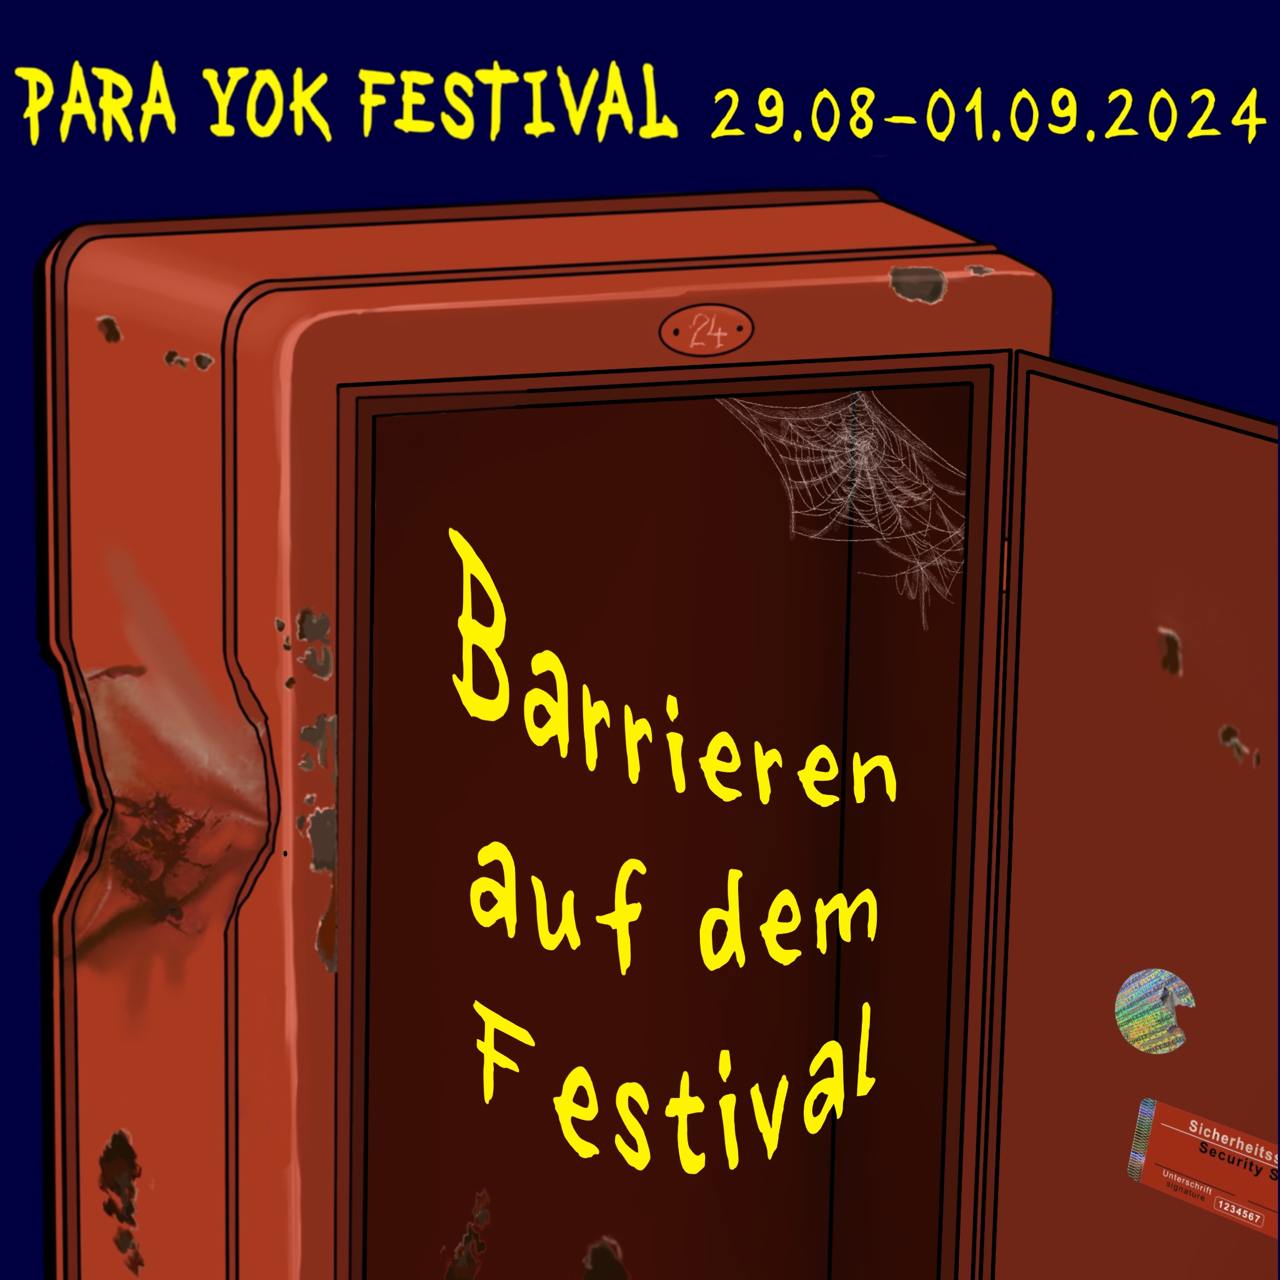 Barrieren auf dem Festival